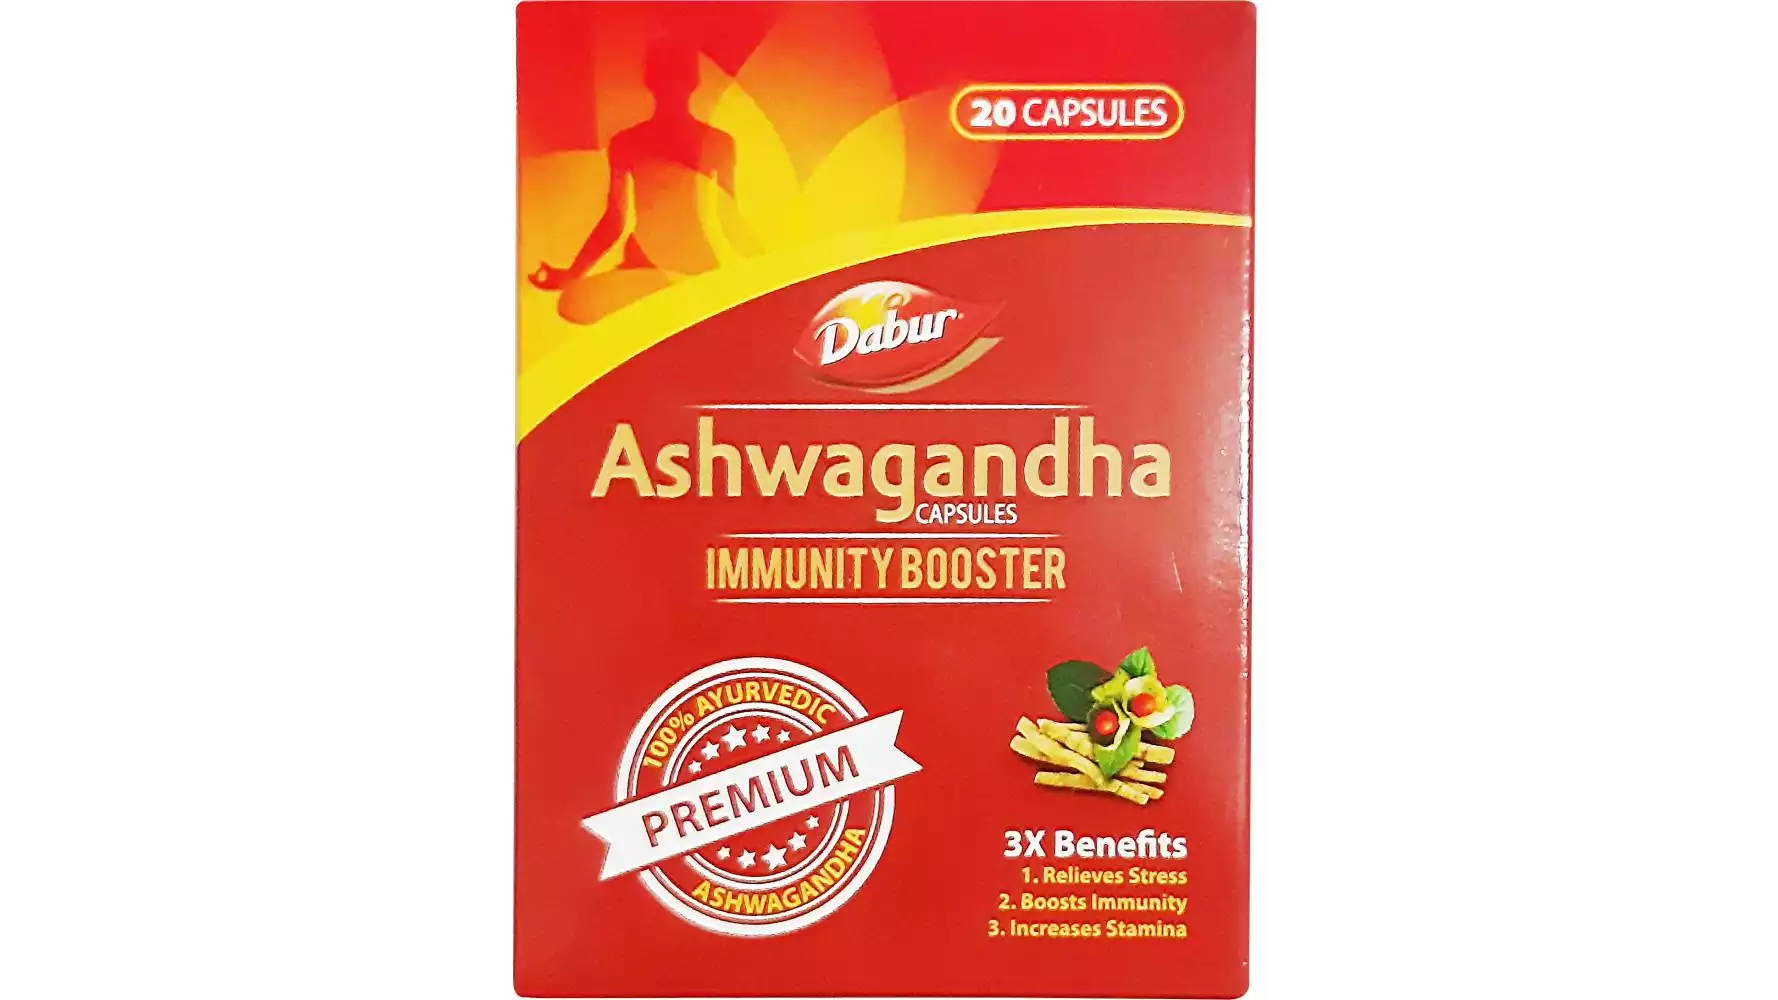 Dabur Ashwagandha Capsules Immunity Booster (20caps)